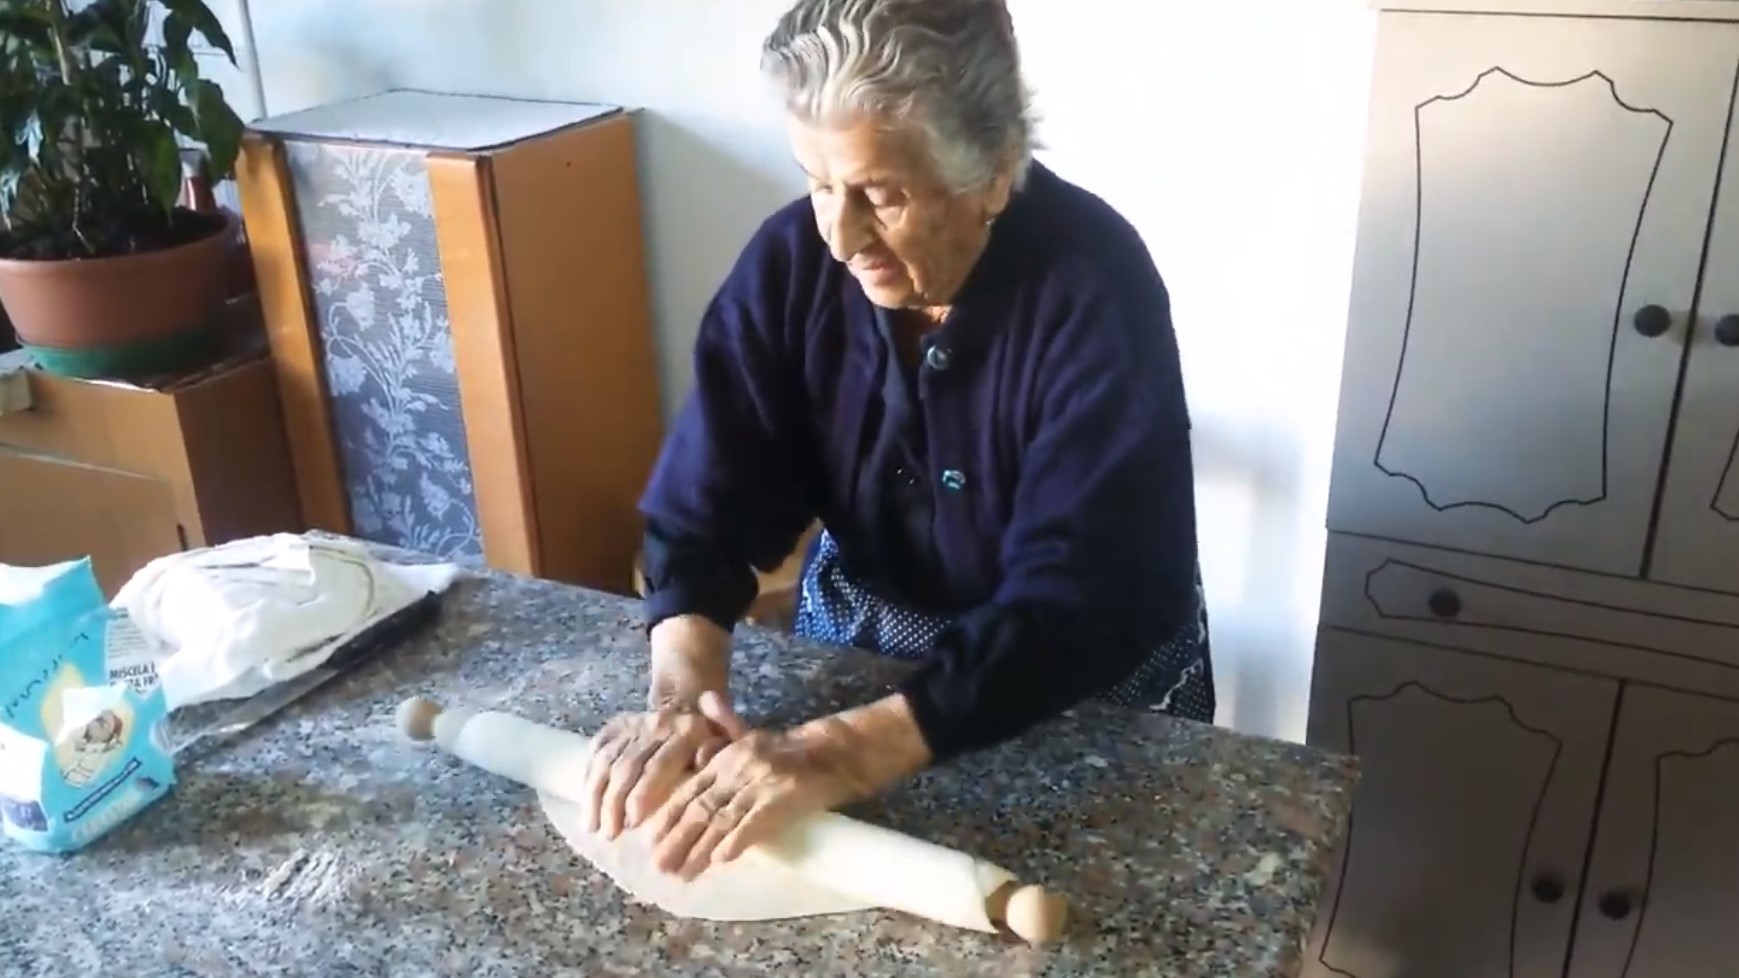 Curiosità sul passato: intervistiamo una nonnina di 94 anni.